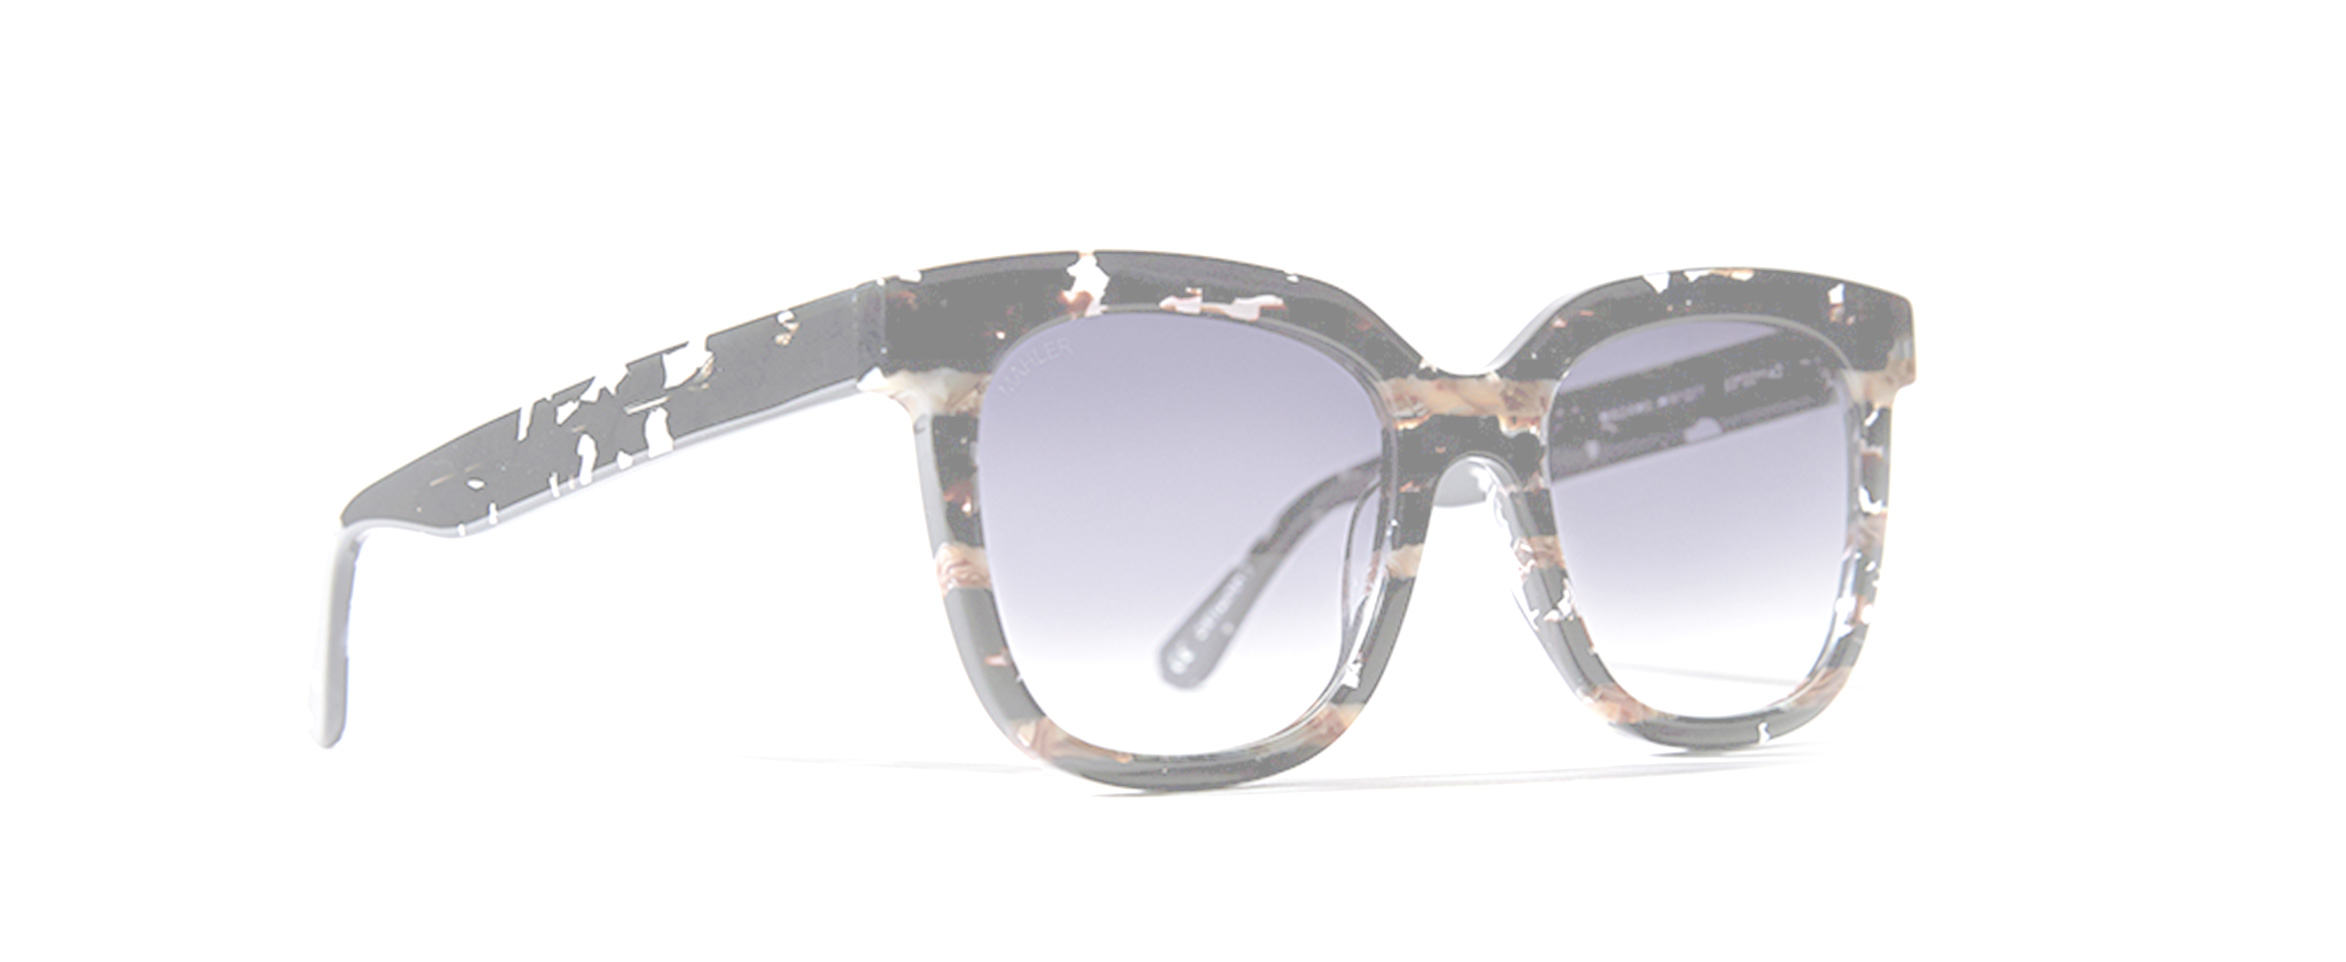 ULLI MAHLER | Sonnenbrillen und optische Brillen